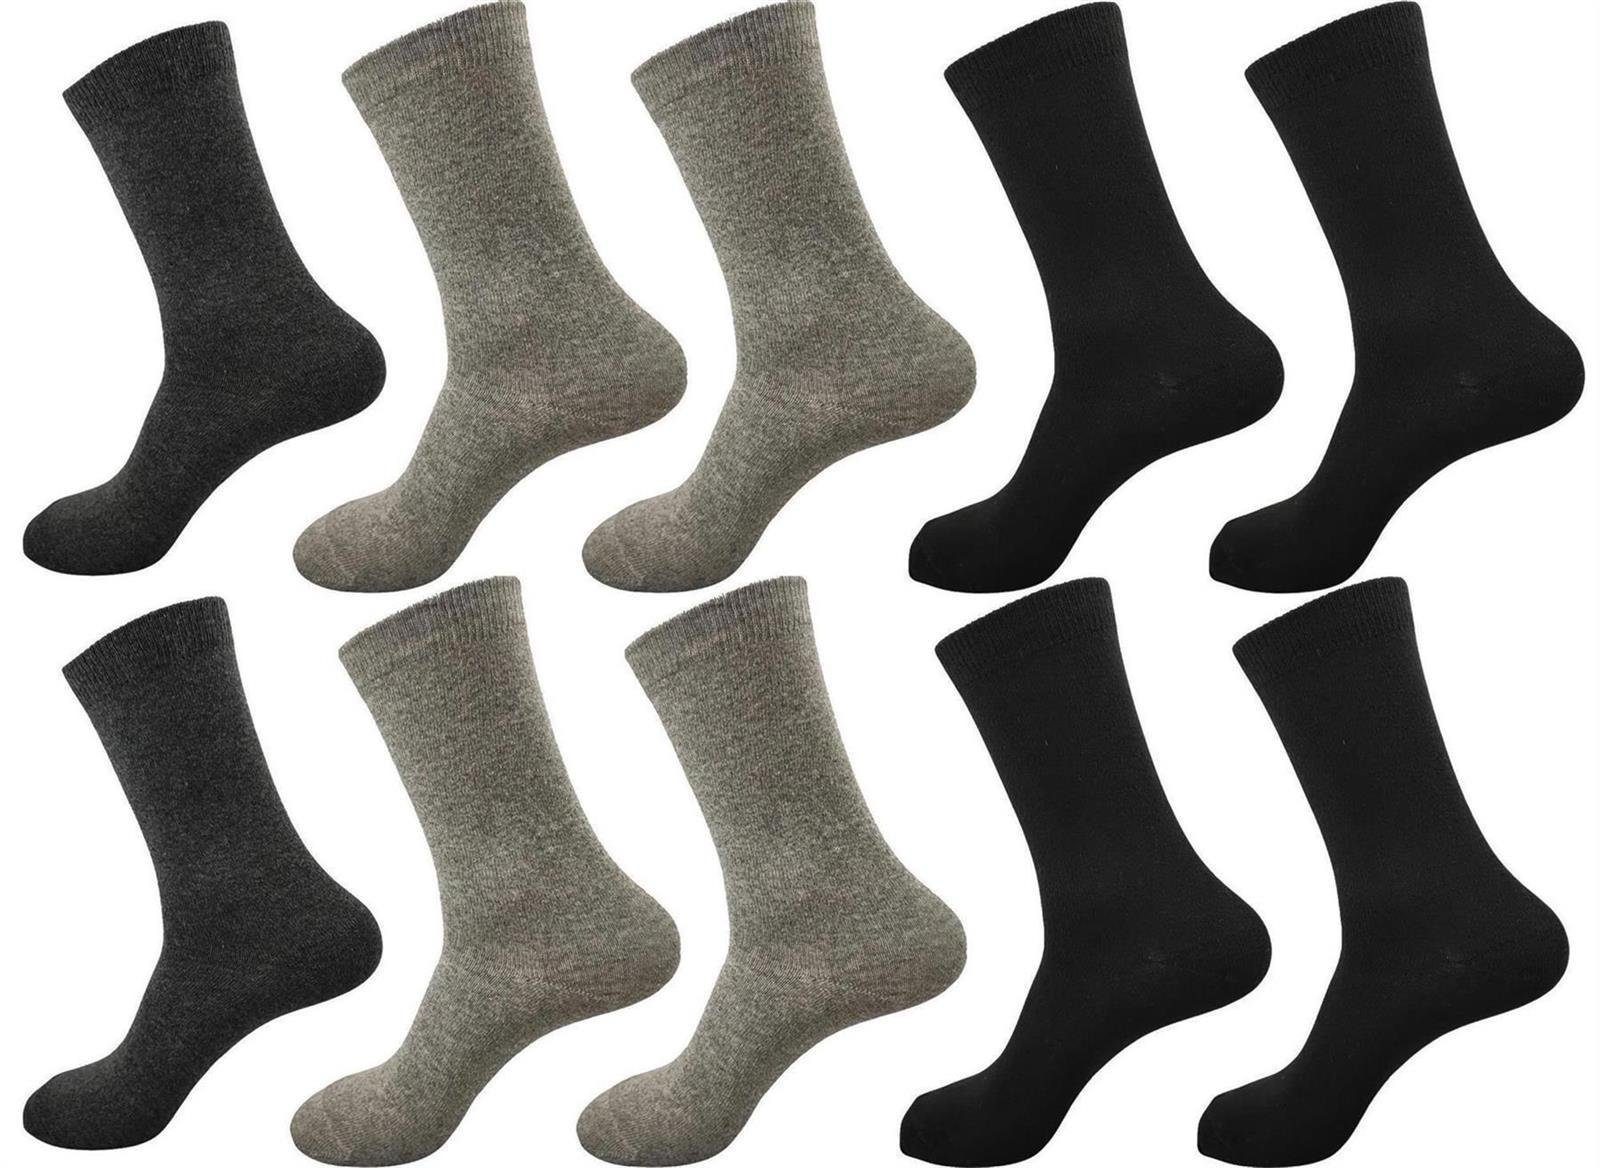 EloModa Basicsocken 5, 10, 15, 20 Paar Herren Business Socken Baumwolle ohne Gummi, (10-Paar) 10 Paar